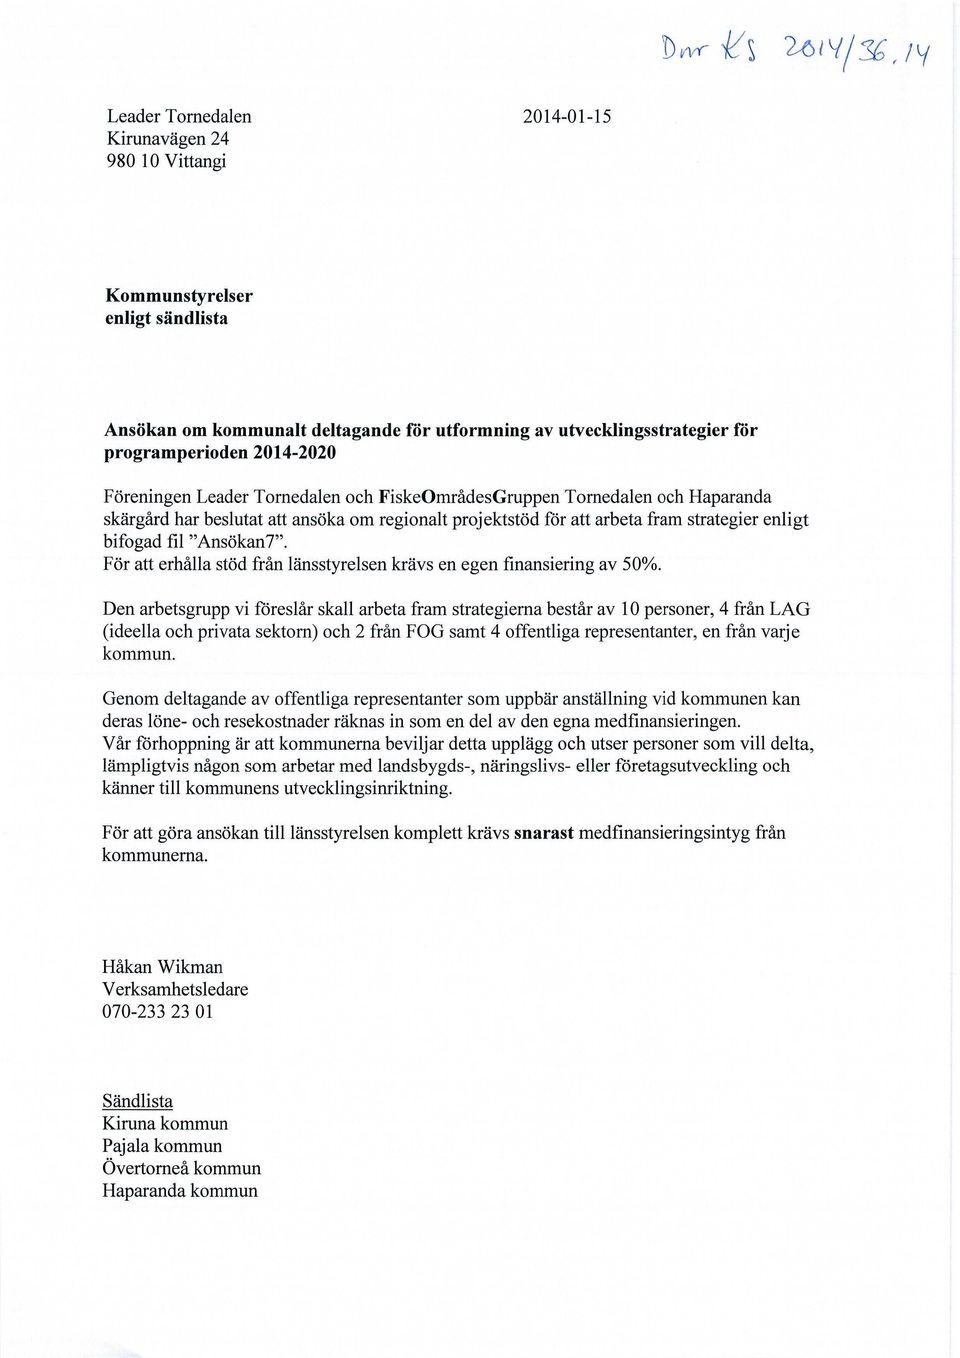 2014-2020 Föreningen Leader Tornedalen och FiskeOmrådesGruppen Tornedalen och Haparanda skärgård har beslutat att ansöka om regionalt projektstöd för att arbeta fram strategier enligt bifogad fil